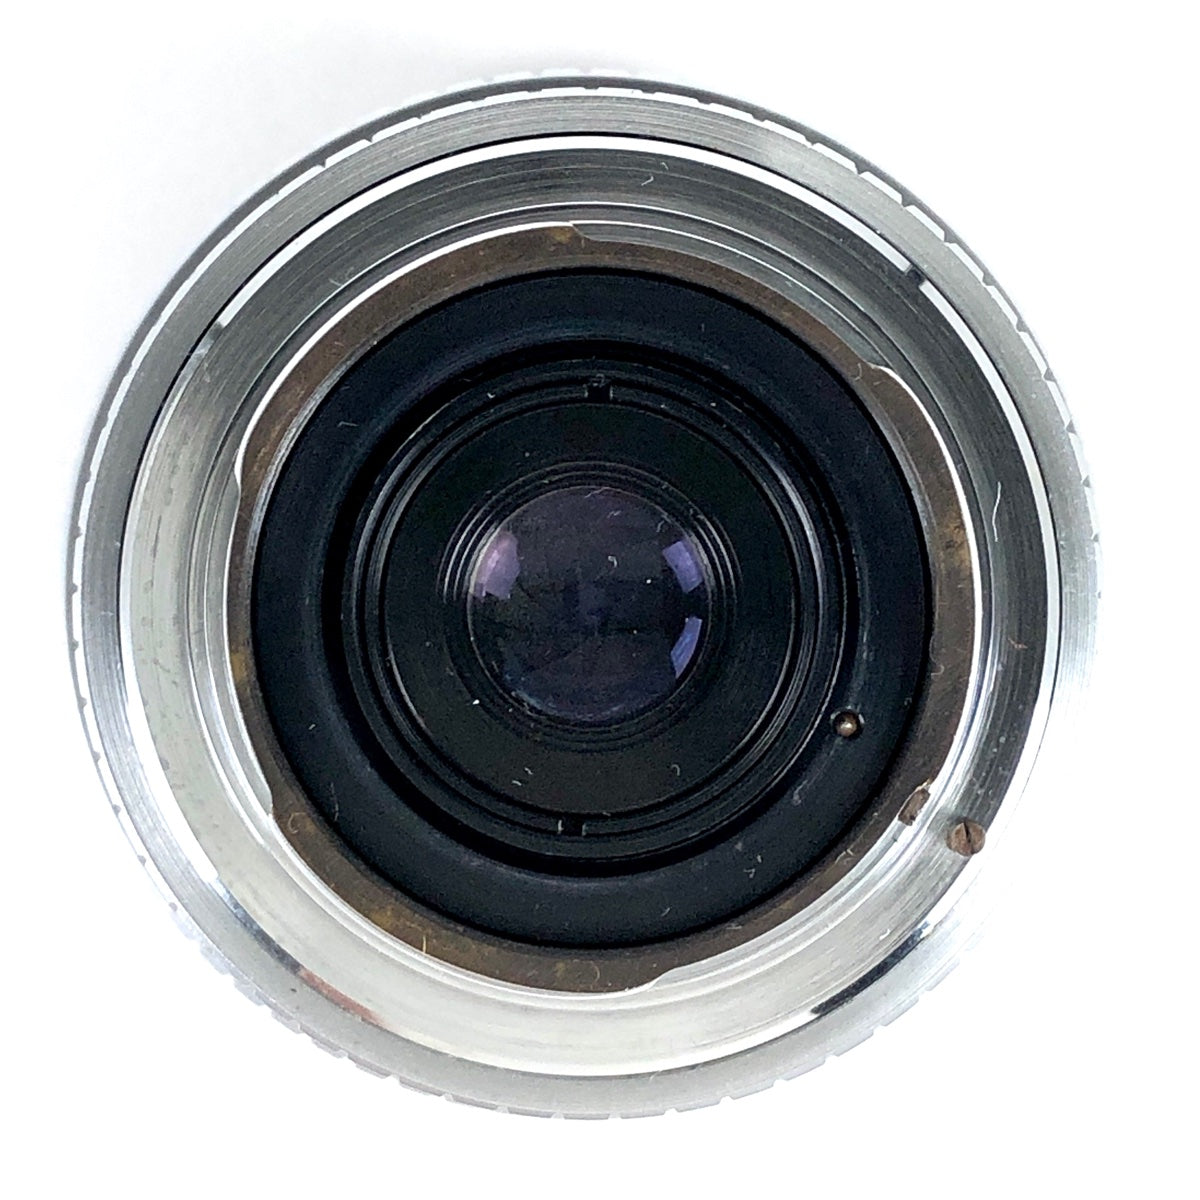 アンジェニュー P.ANGENIEUX RETROFOCUS TYPE R11 28mm F3.5 エキザクタ マウント  一眼カメラ用（マニュアルフォーカス） 【中古】